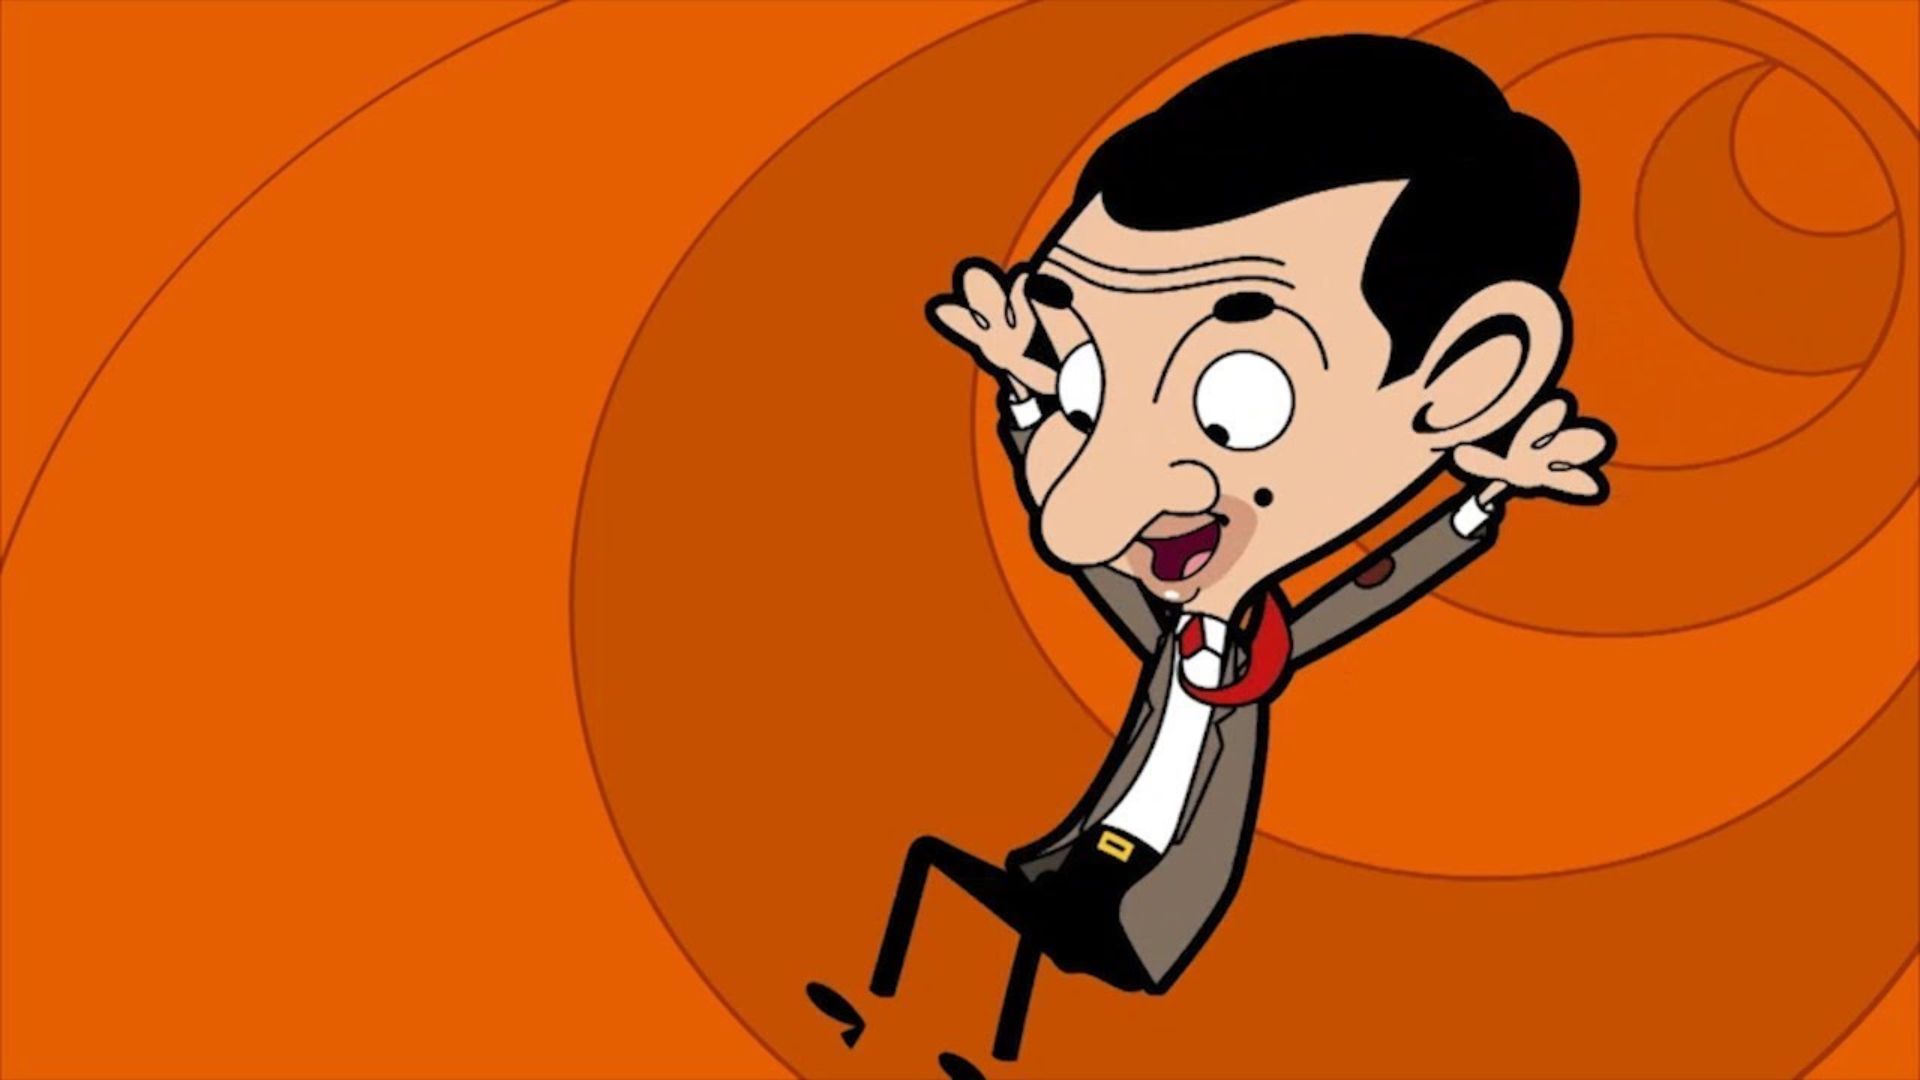 Mr Bean In Orange Tunnel